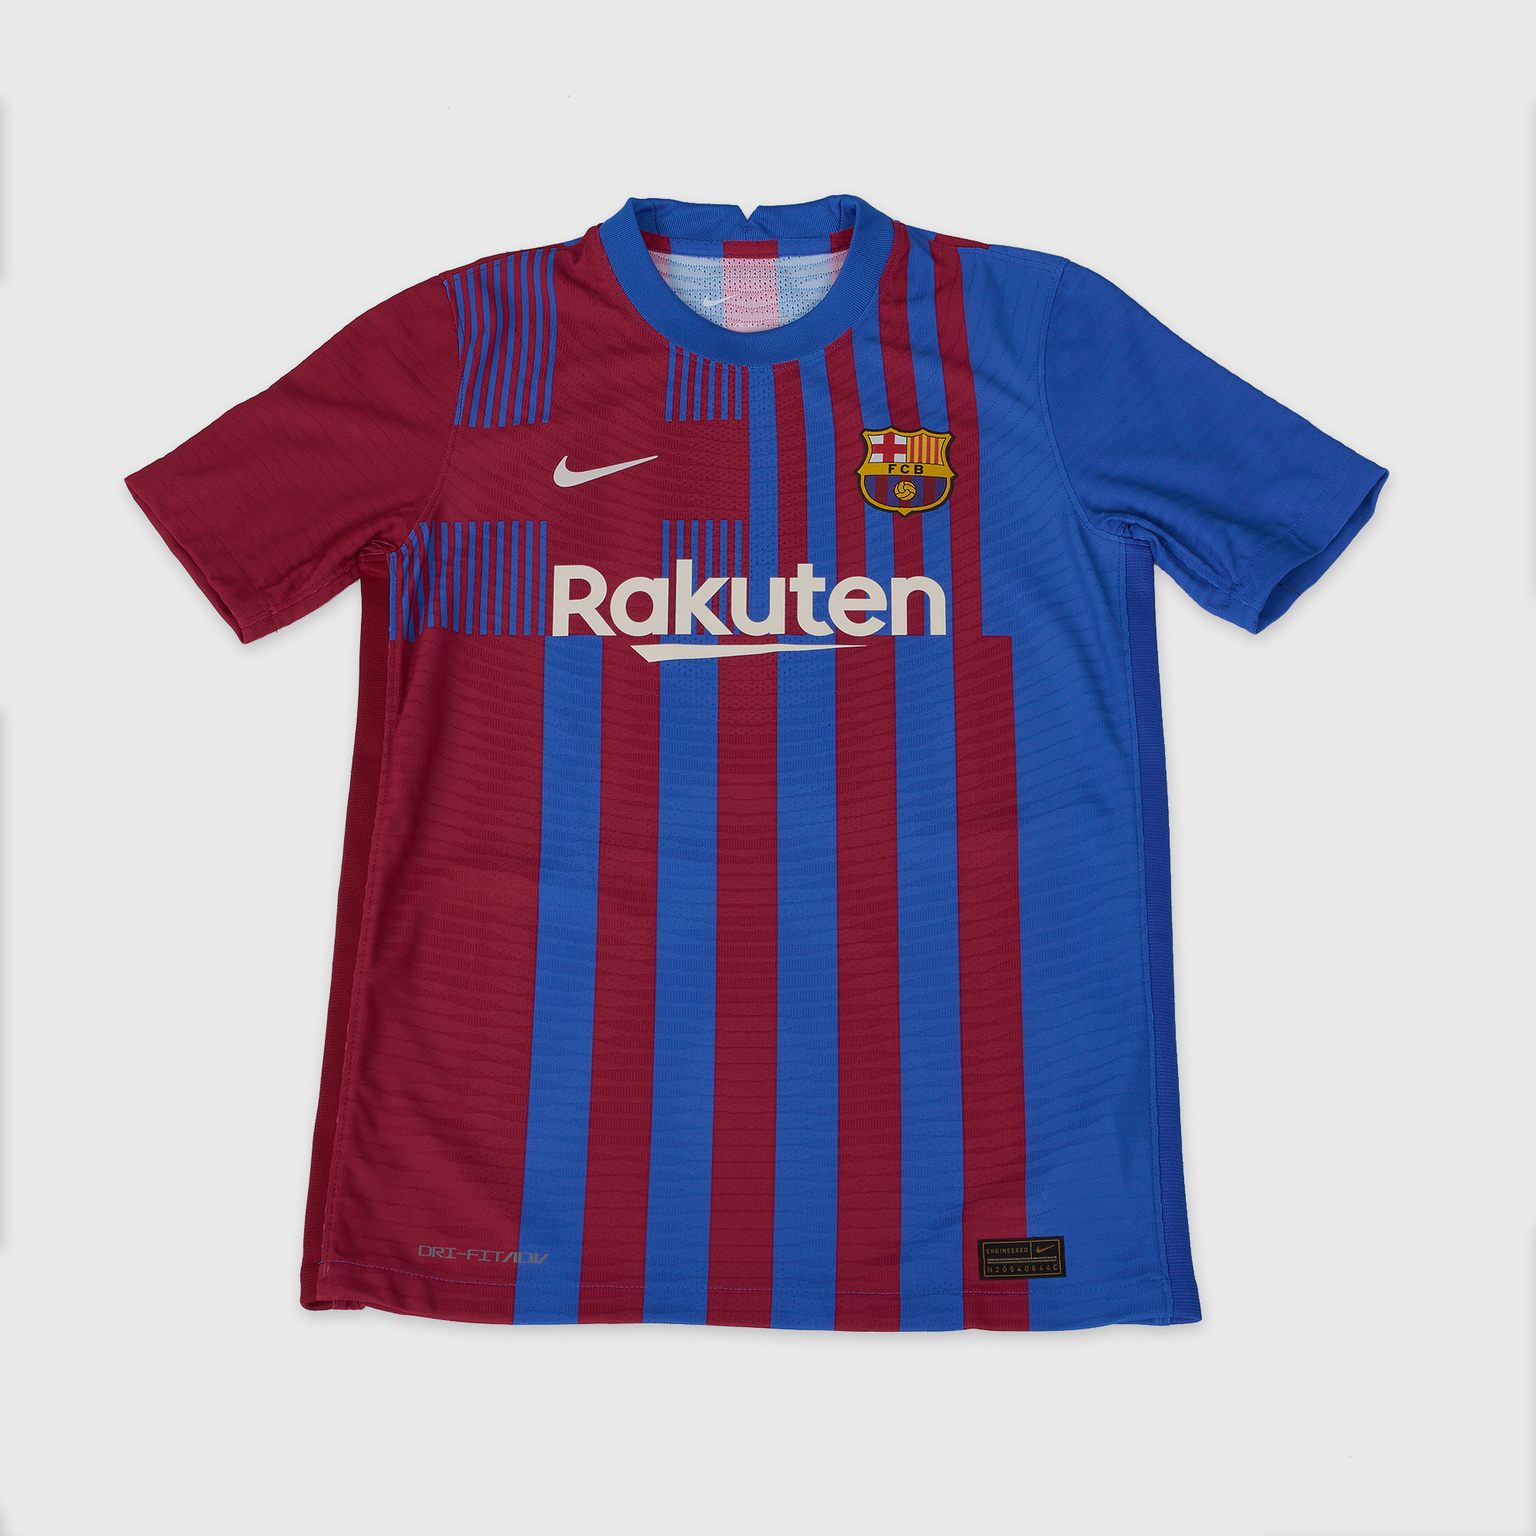 Оригинальная домашняя подростковая футболка Nike Barcelona сезон 2021/22